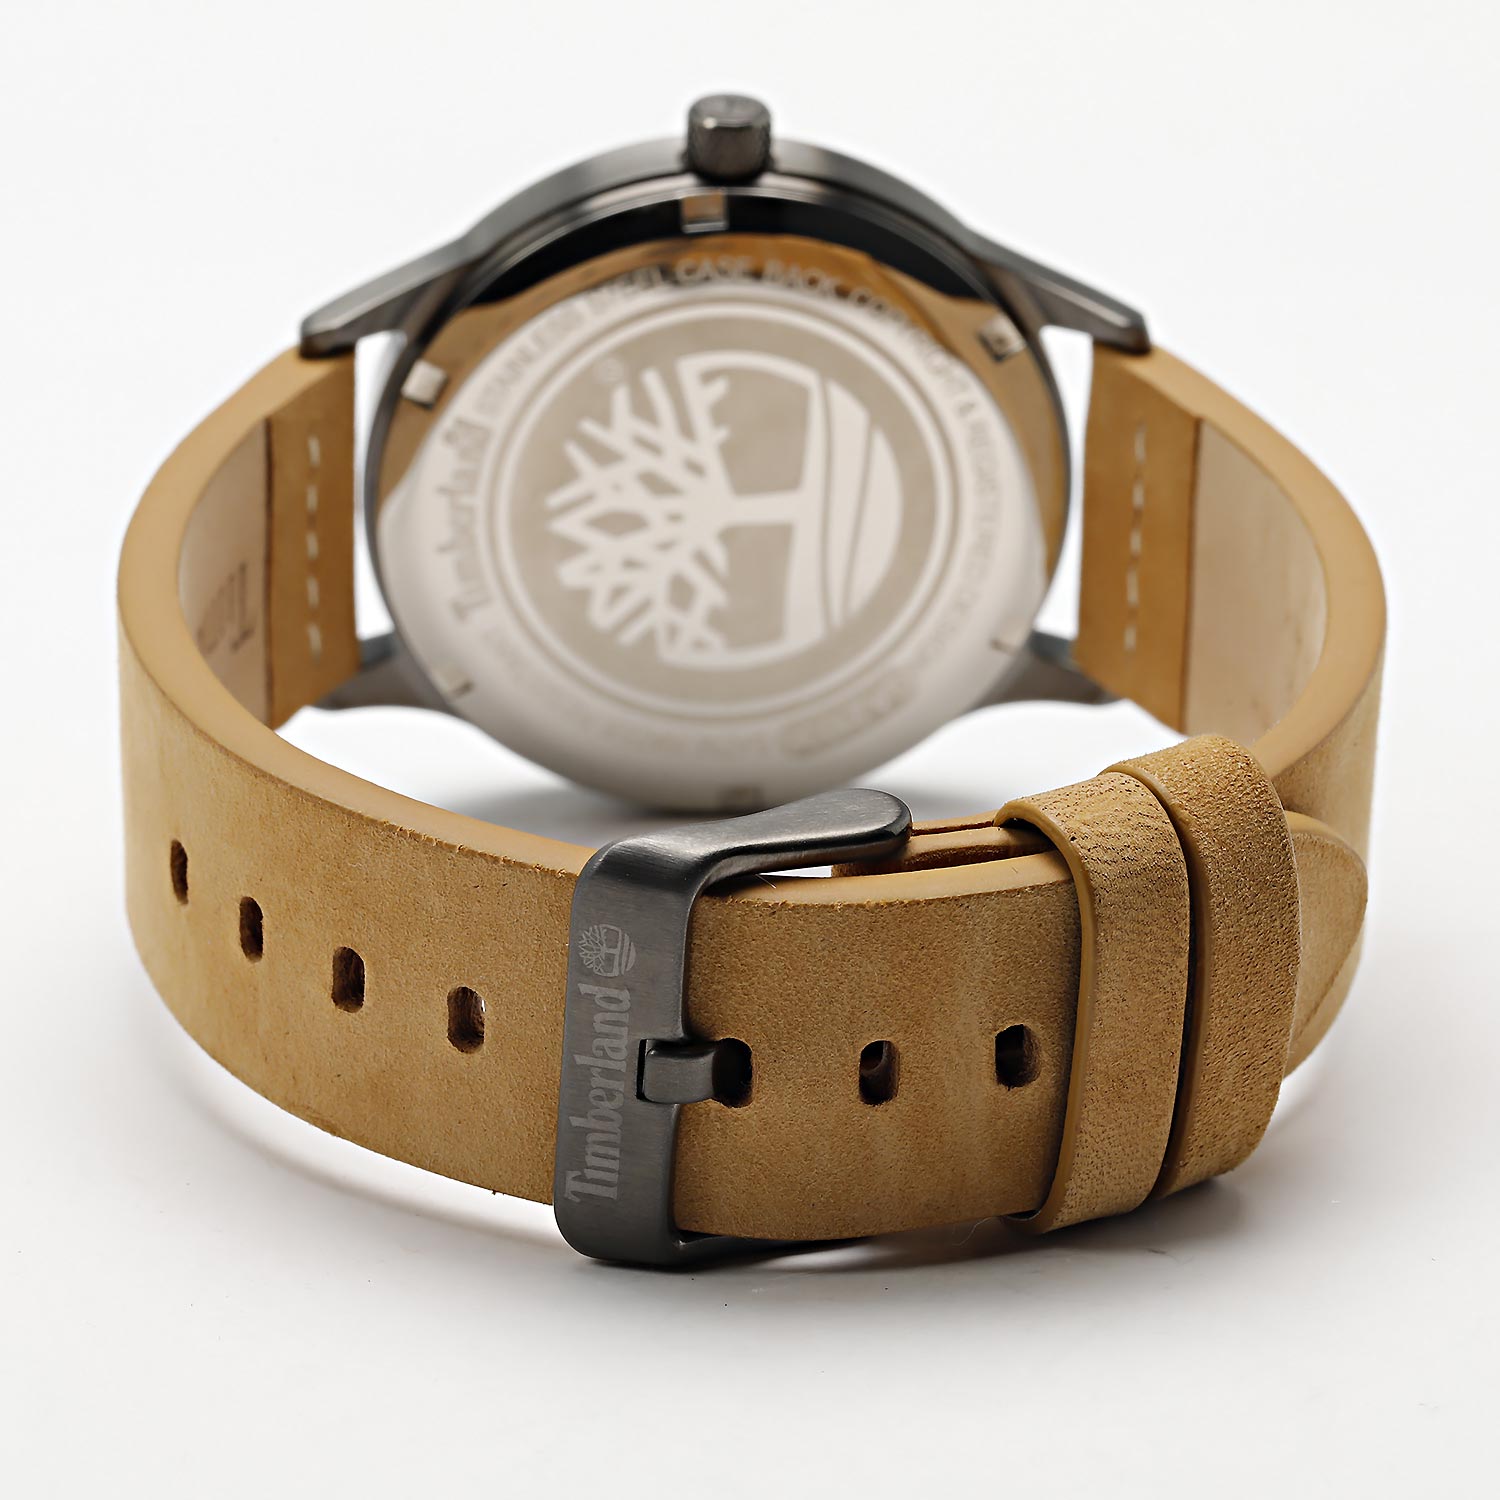 Наручные часы в TDWGA2103601 интернет-магазине — AllTime.ru характеристики, фото, инструкция, лучшей цене, описание Timberland купить по